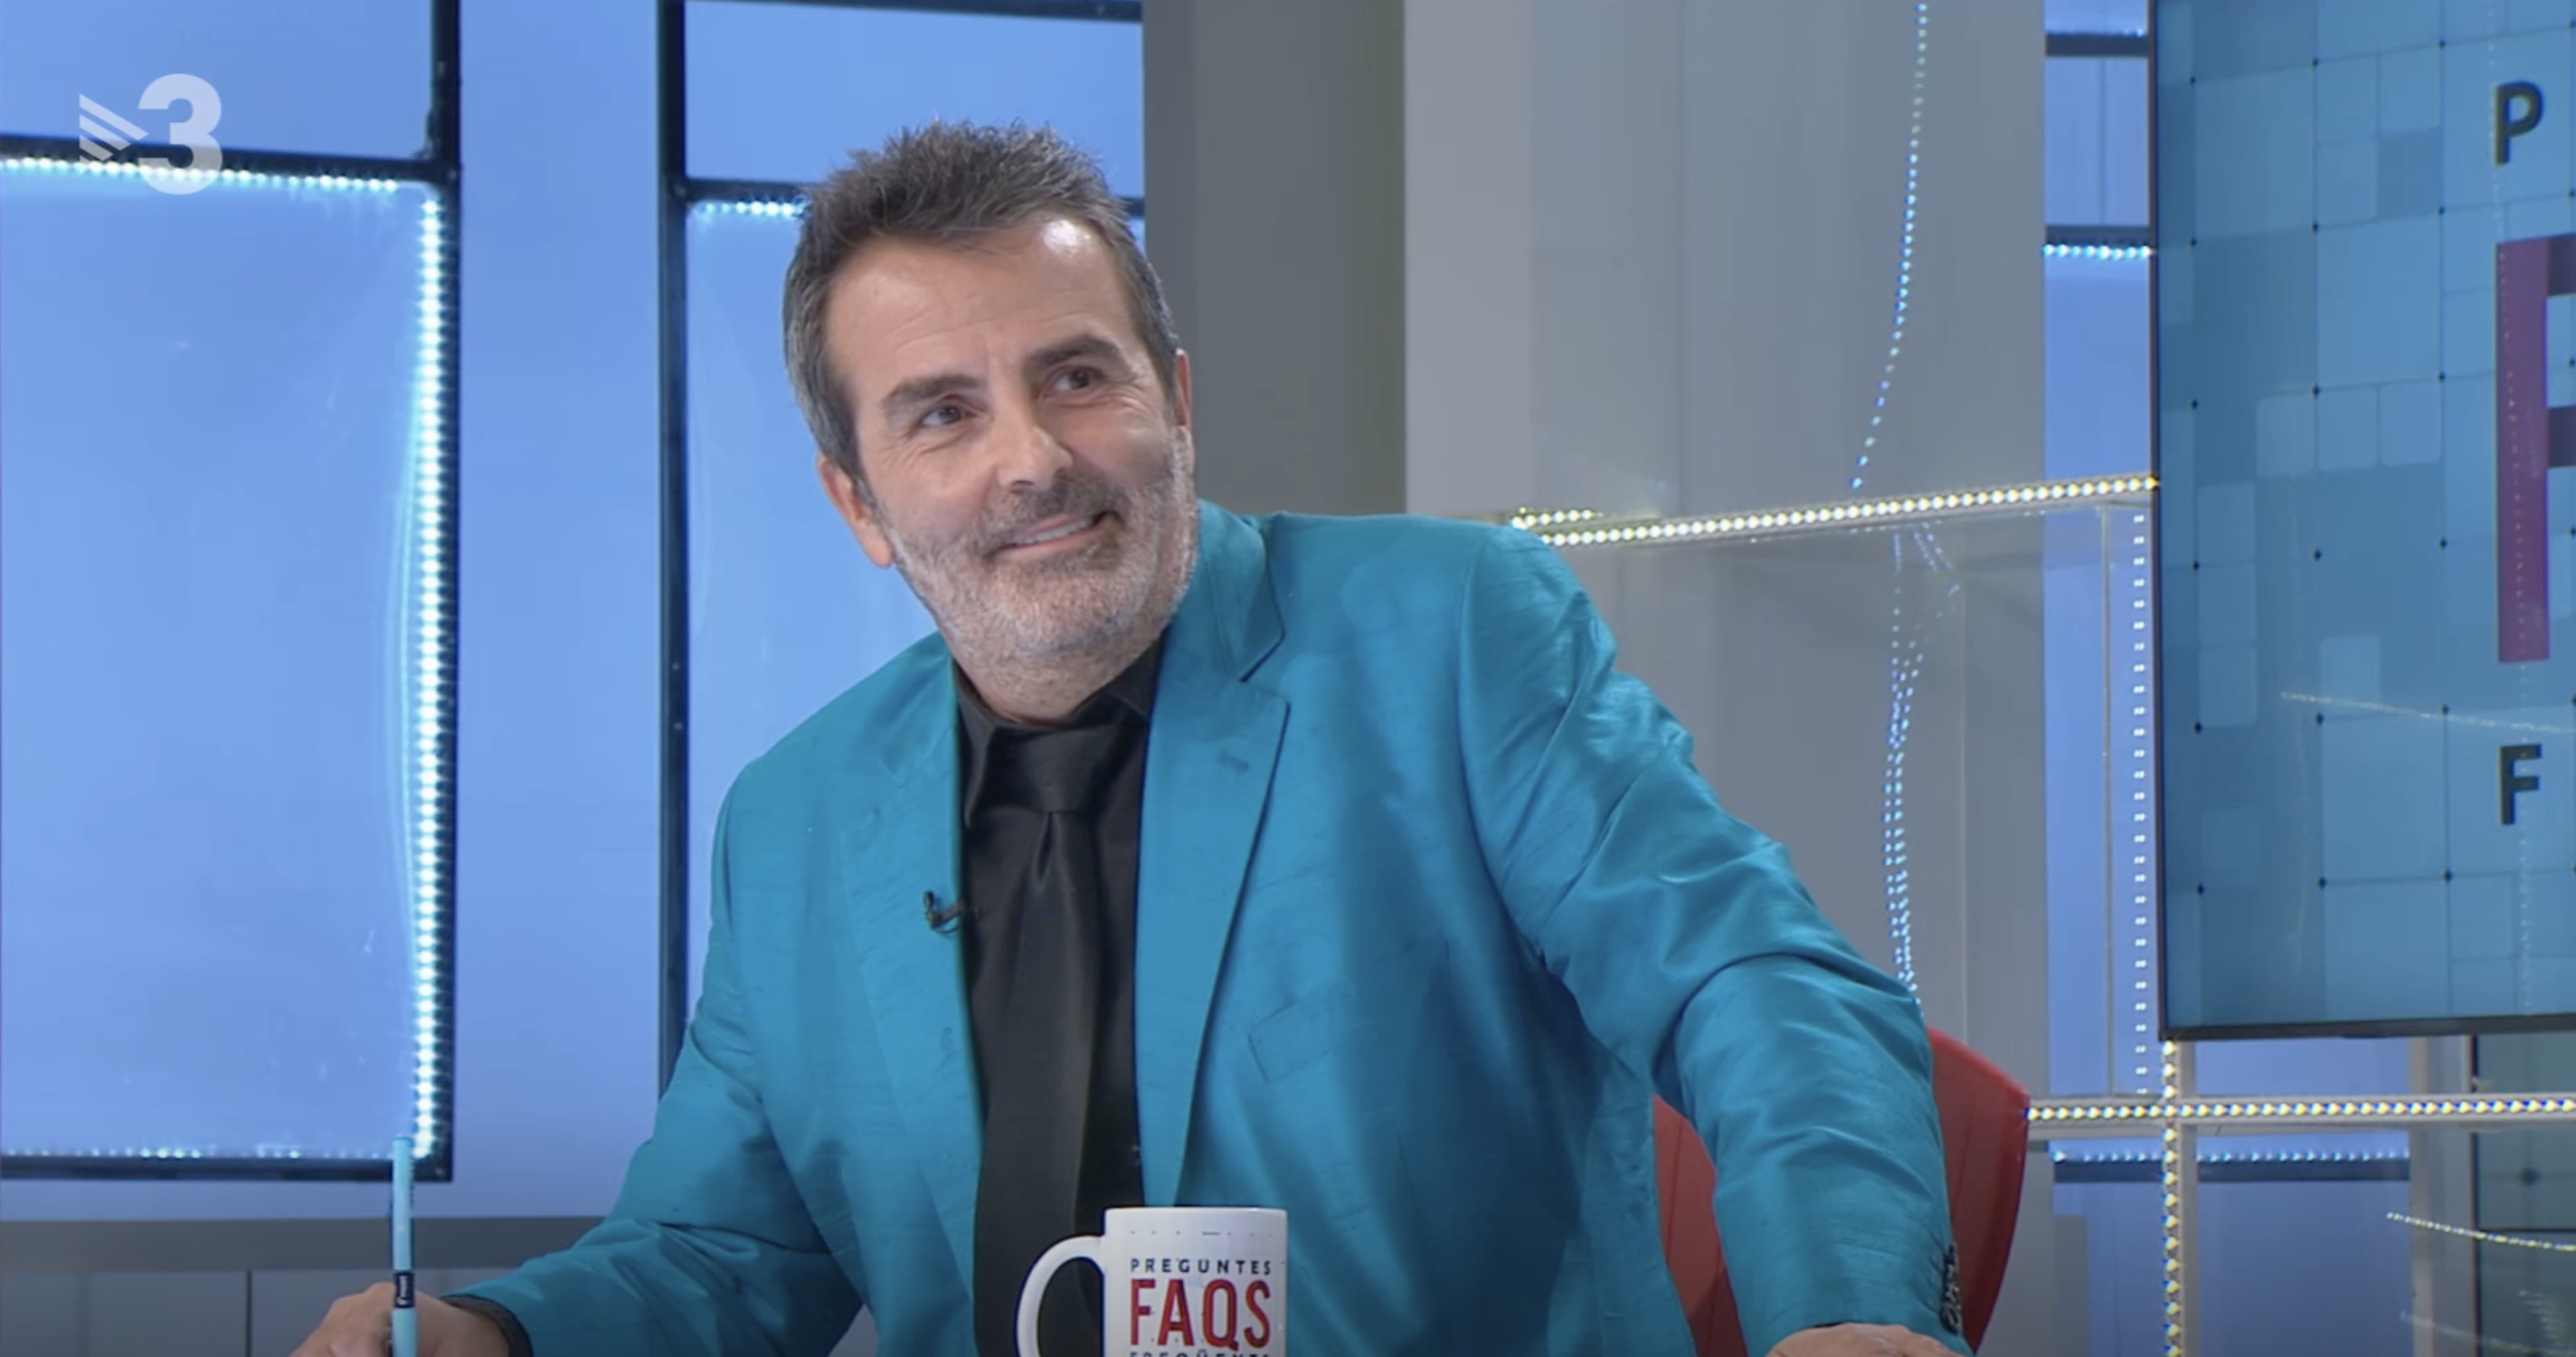 Sala-i-Martin se mofa de la obsesión de Víctor Font por Laporta